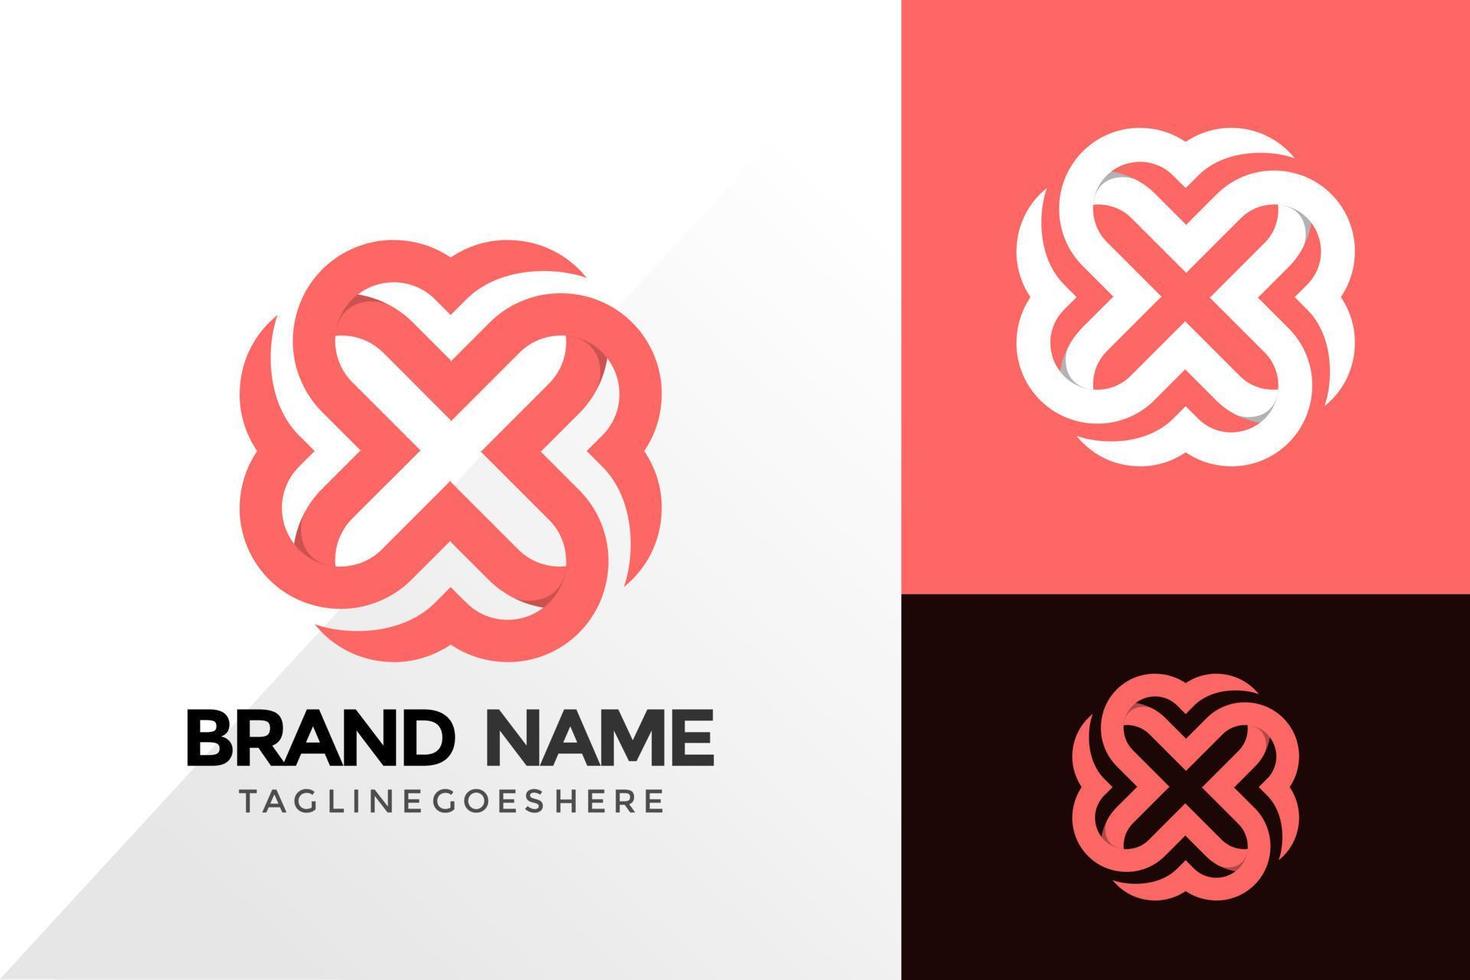 Flower hearth Logo Design, Abstract Logos Designs Concept for Template vector